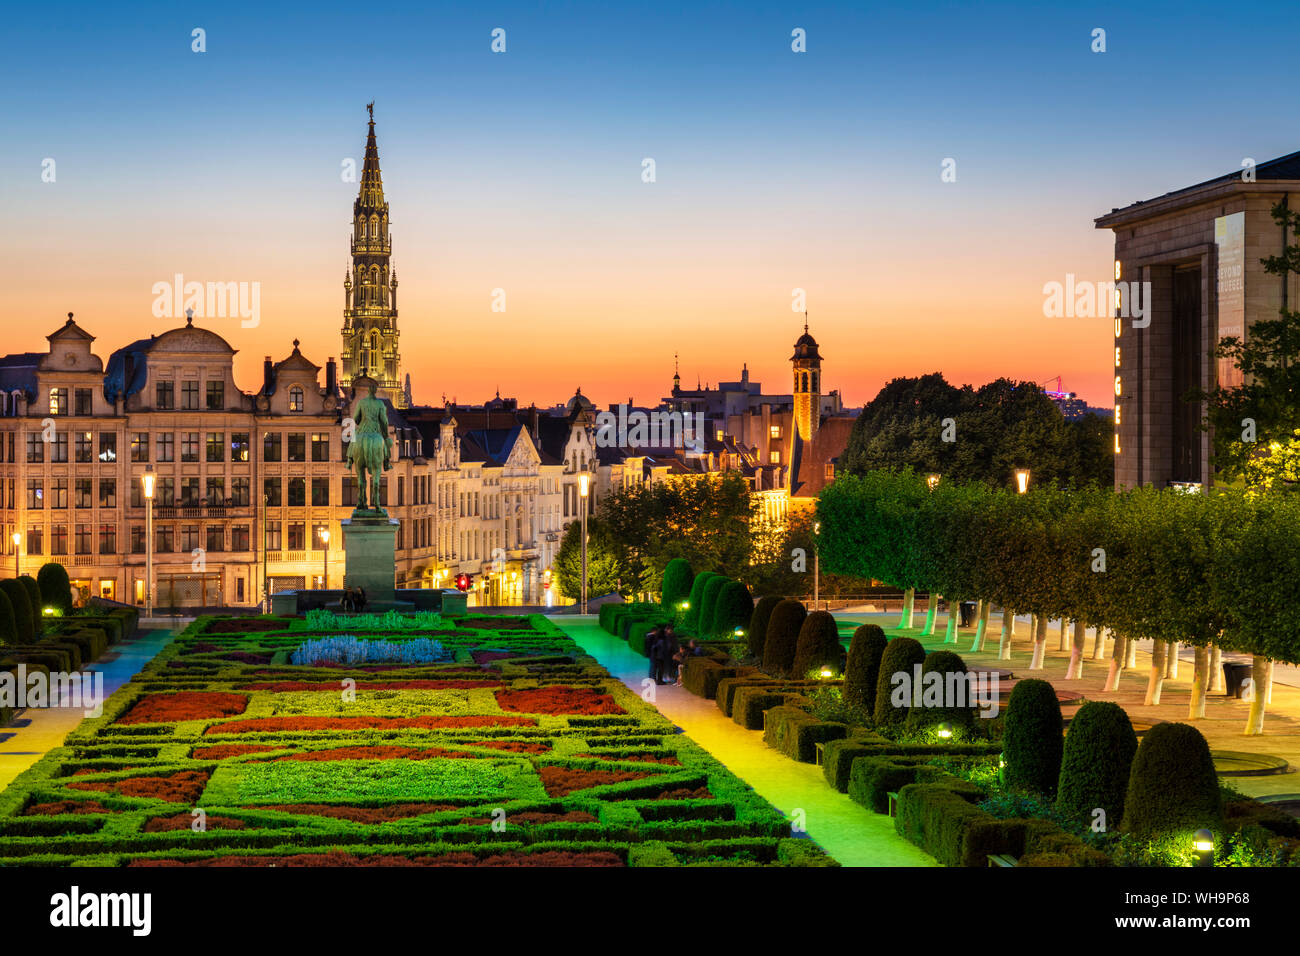 Stadtbild bei Sonnenuntergang, Mont des Arts mit Flutlicht beleuchteten Garten, Brüssel, Belgien, Europa Stockfoto